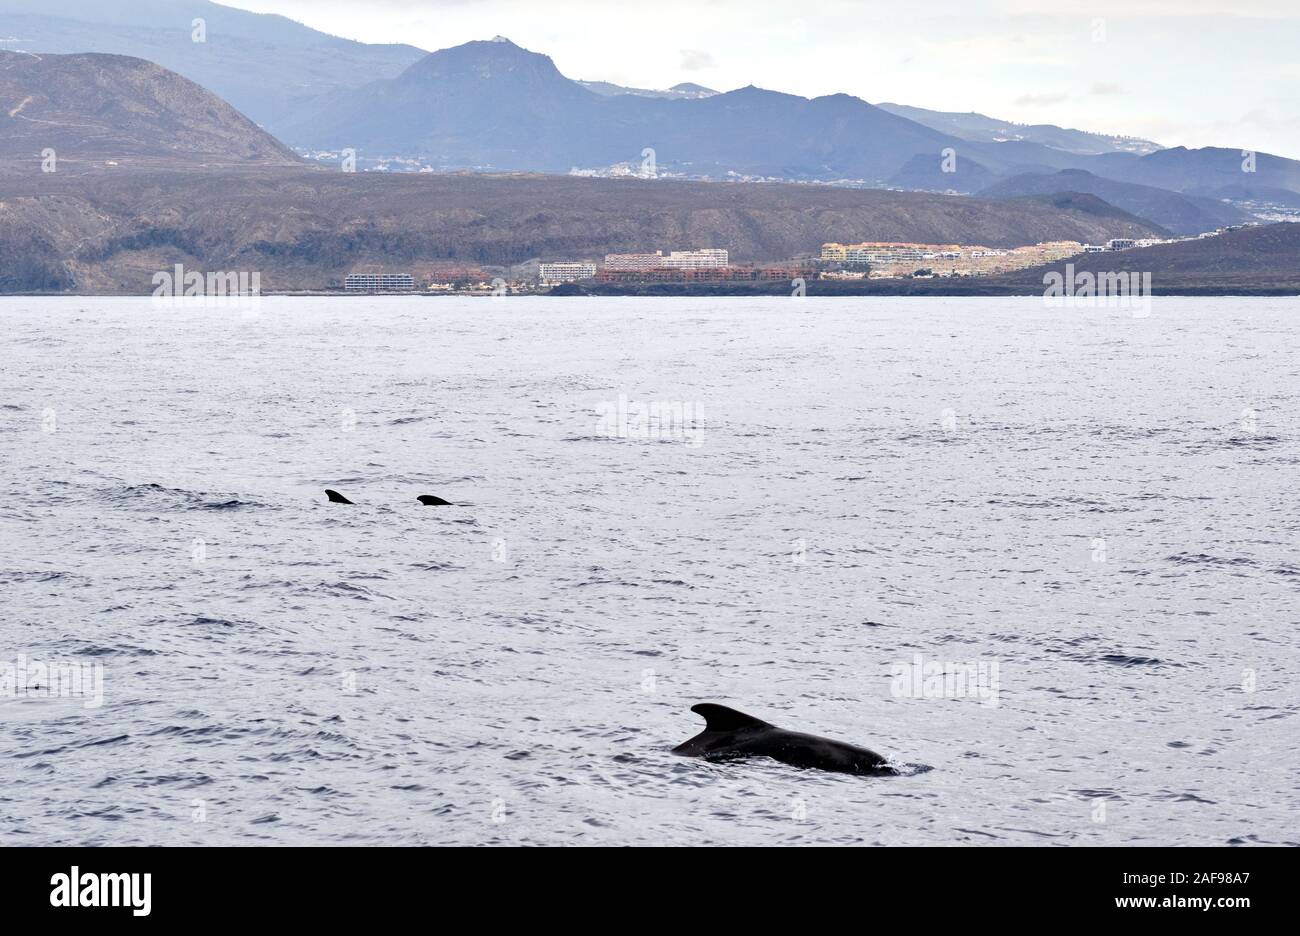 Alalonga balene pilota nelle acque del Mar Mediterraneo. Isola di Tenerife, Canarie, Spagna Foto Stock